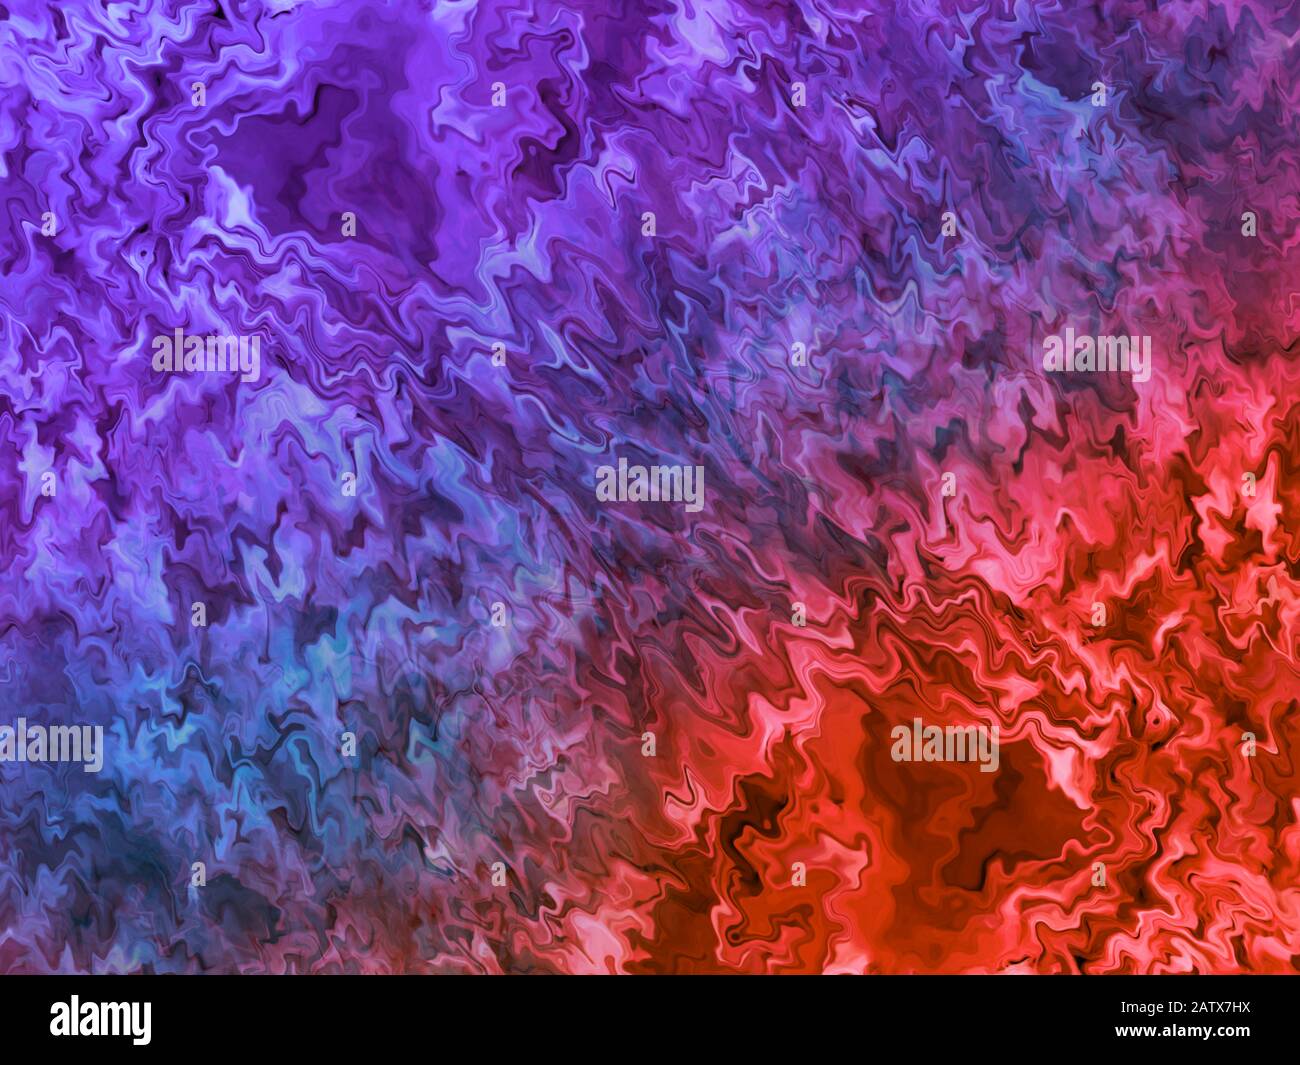 Violett - dynamische Wellenschwingungen in Rot. Abstrakter Hintergrund. Stockfoto